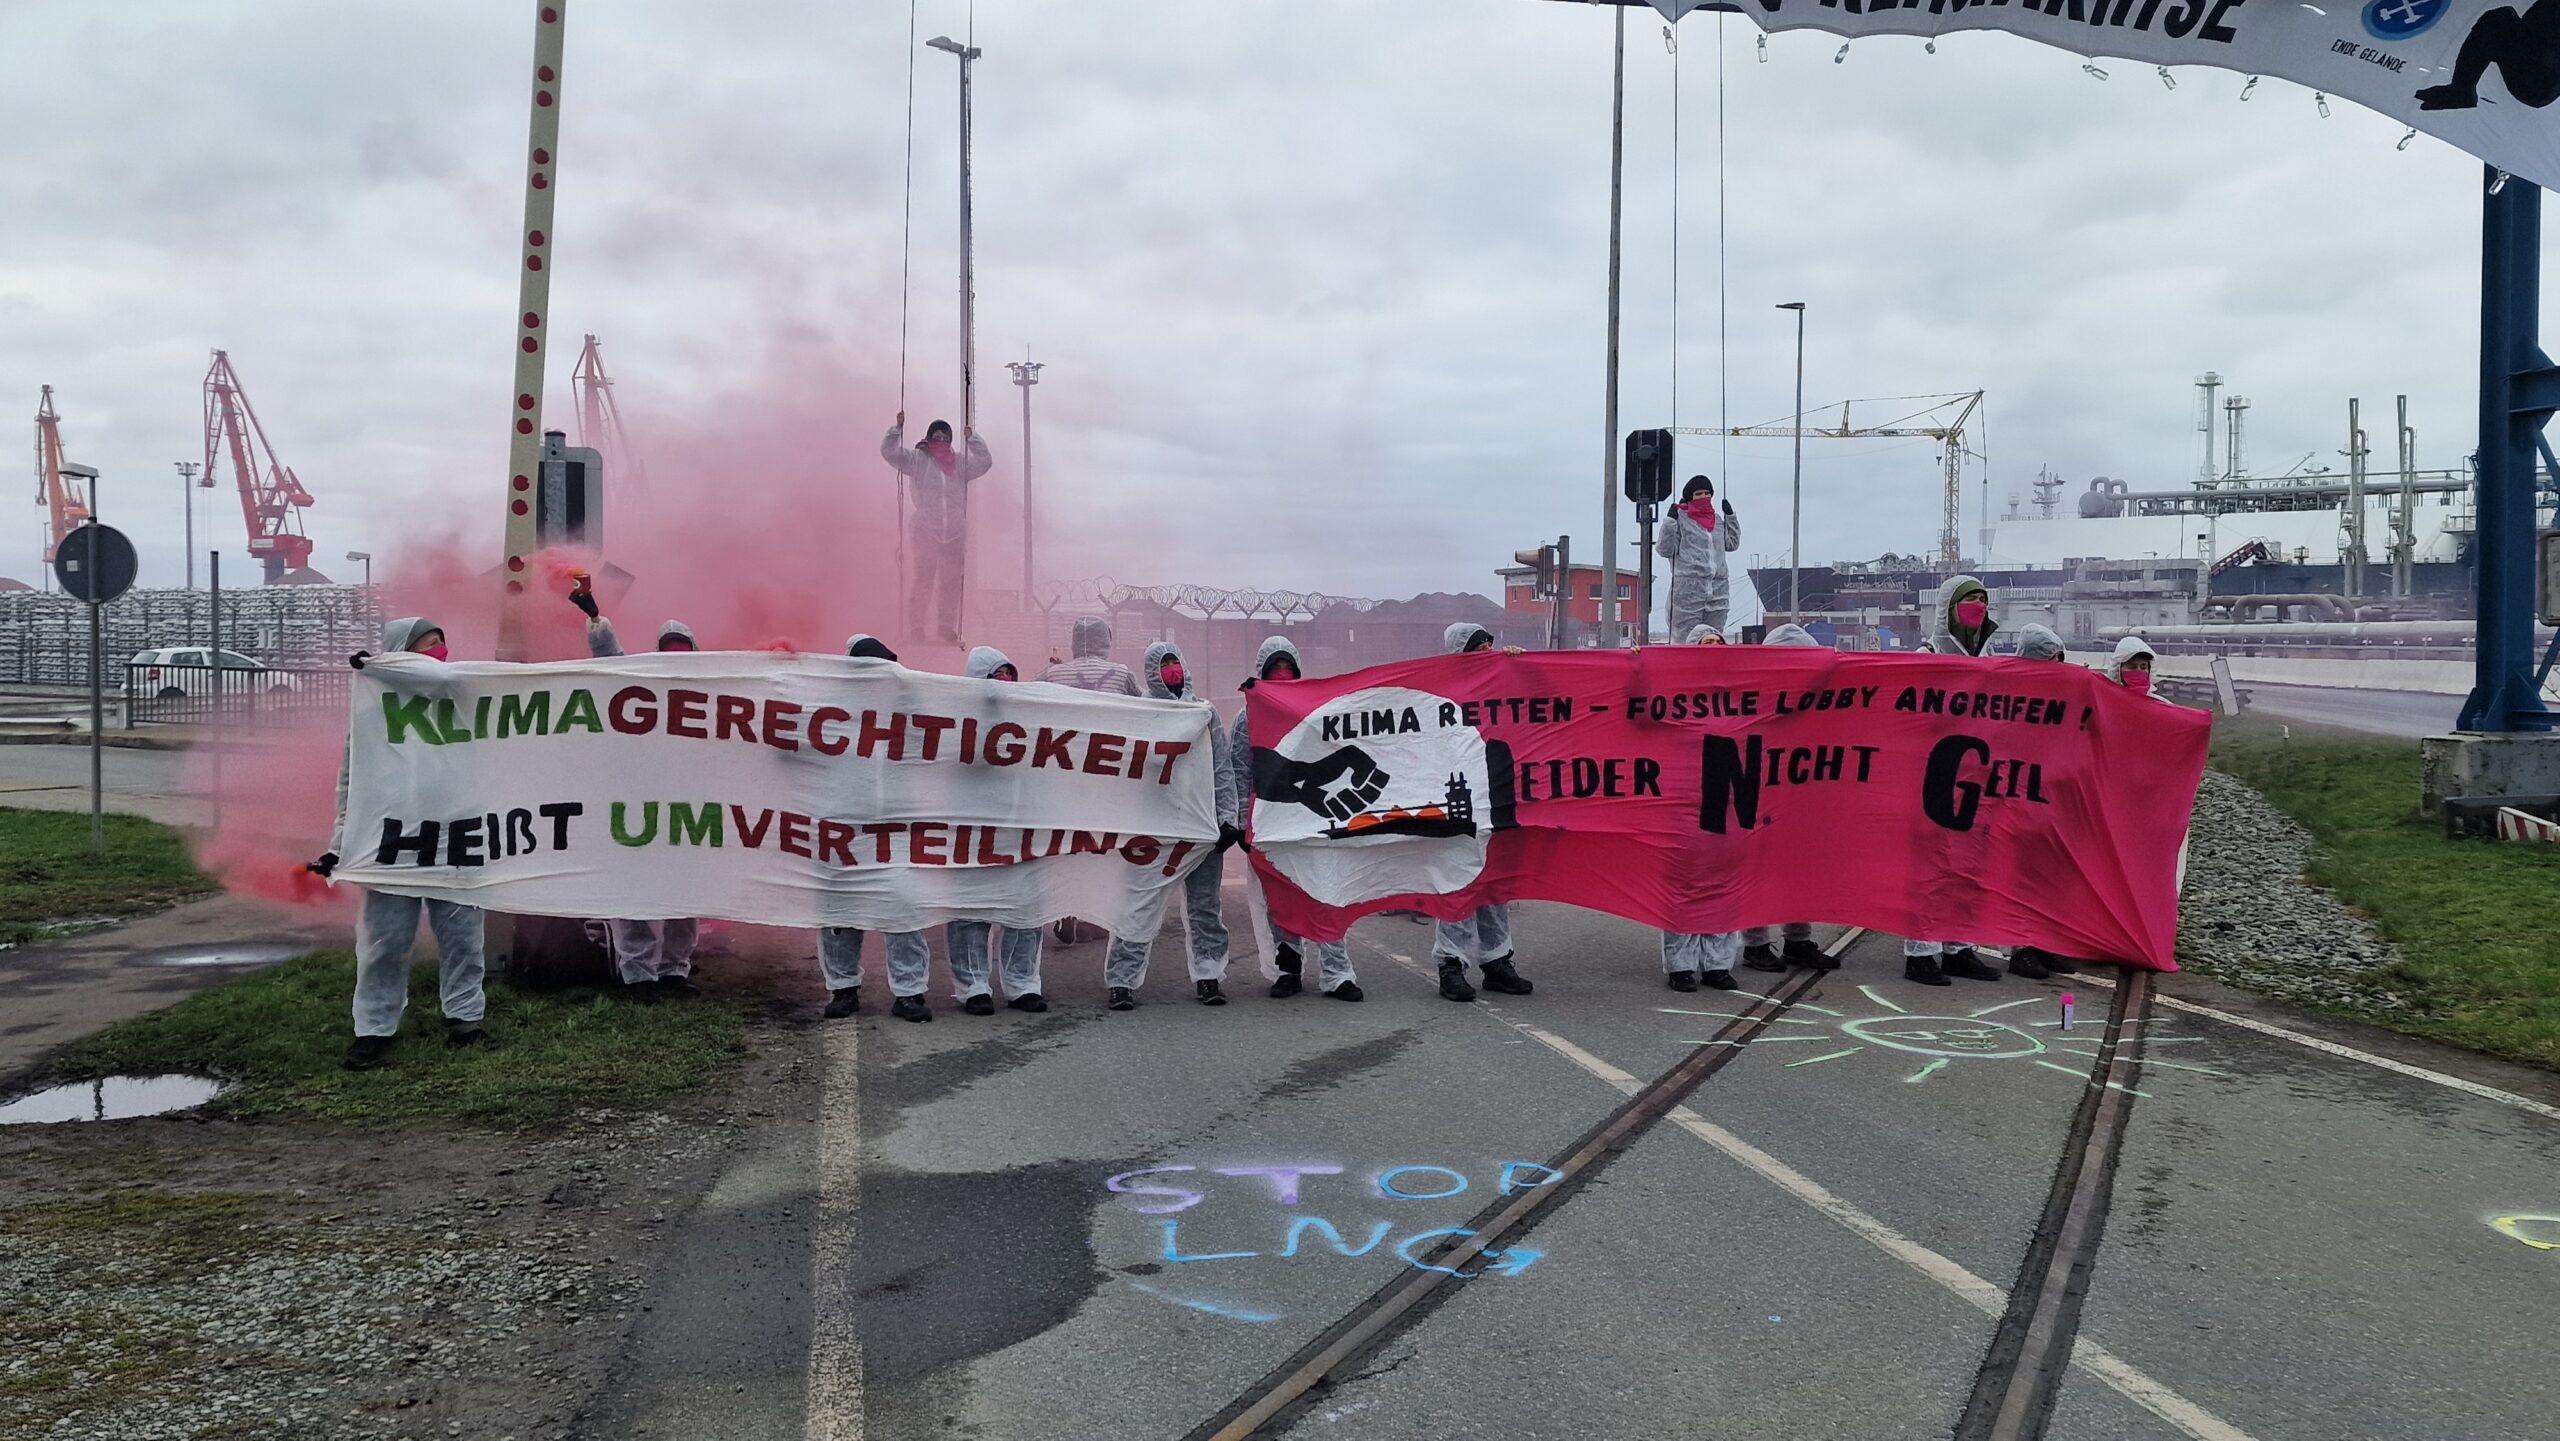 Prostestaktion am LNG-Termial in Brunsbüttel. Klima-Aktivisten blockieren Zufahrt